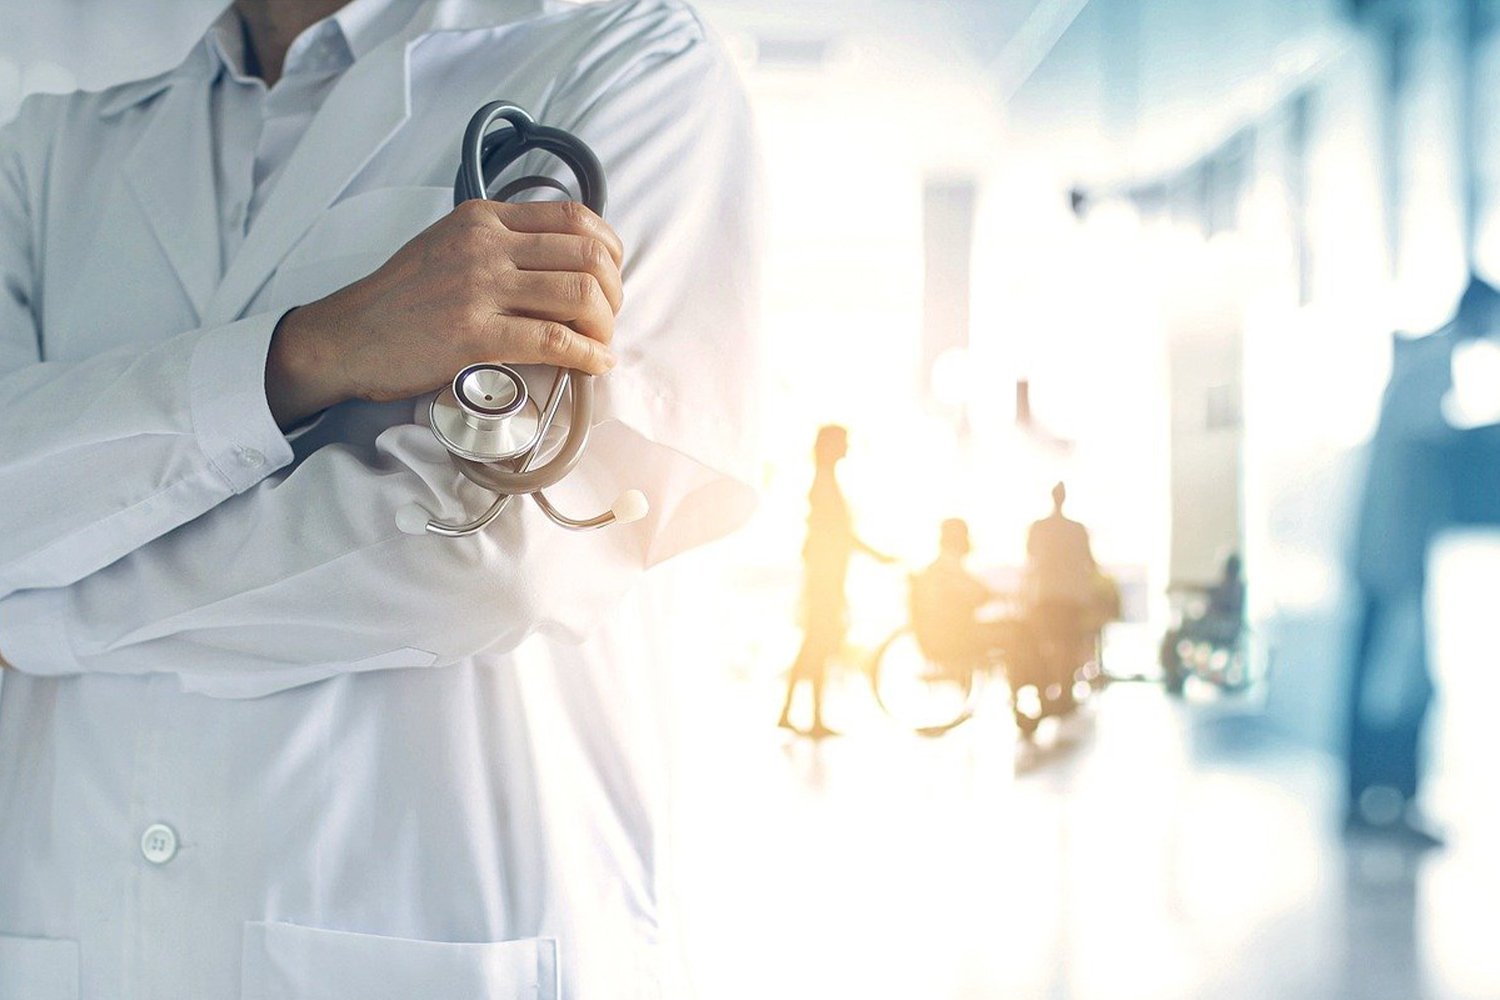 Symbolfoto: Vorne ein Arzt im Kittel mit Stethoskop. Im Hintergrund sind mehrere Menschen zu erkennen, darunter auch eine Person im Rollstuhl.